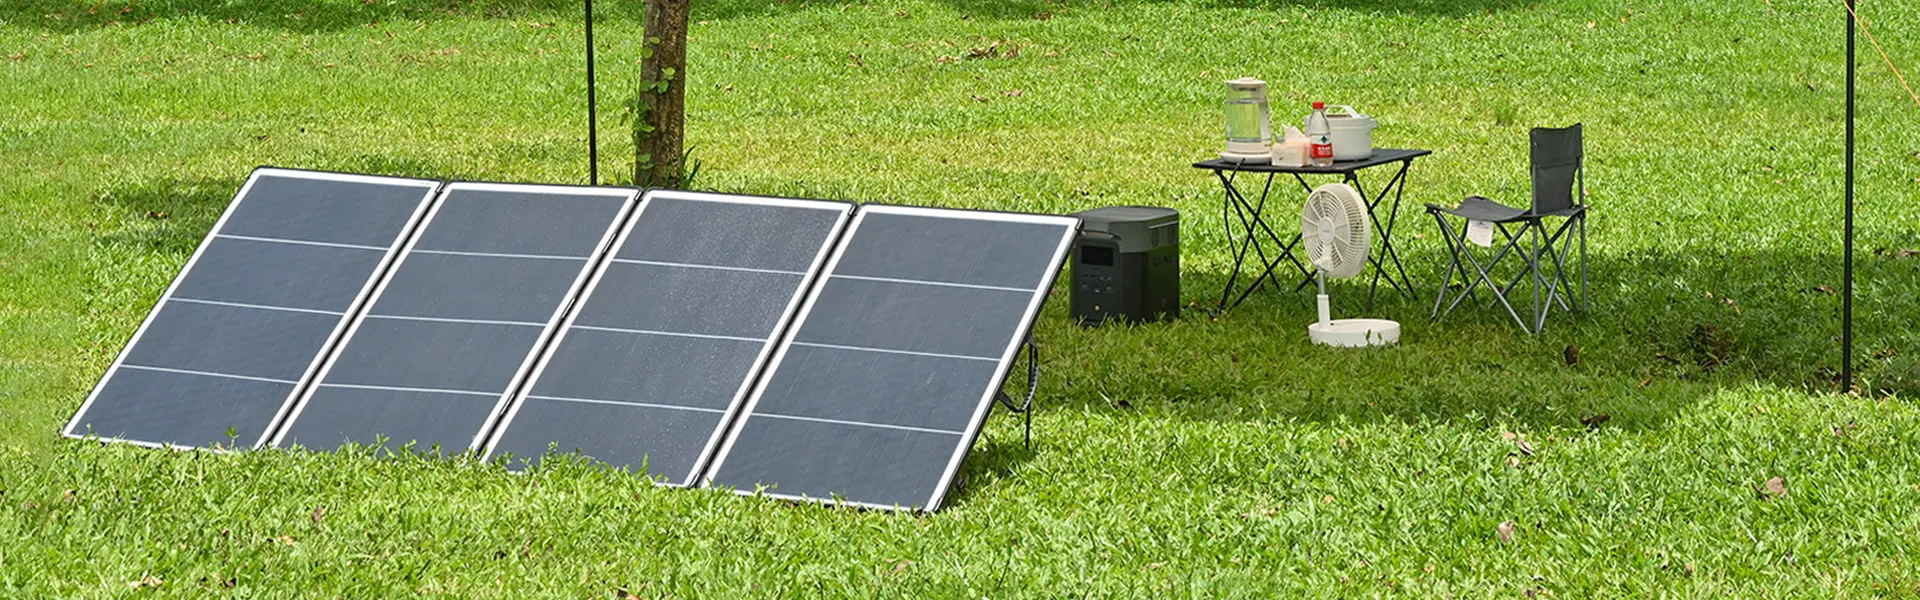 portable ev solar charger